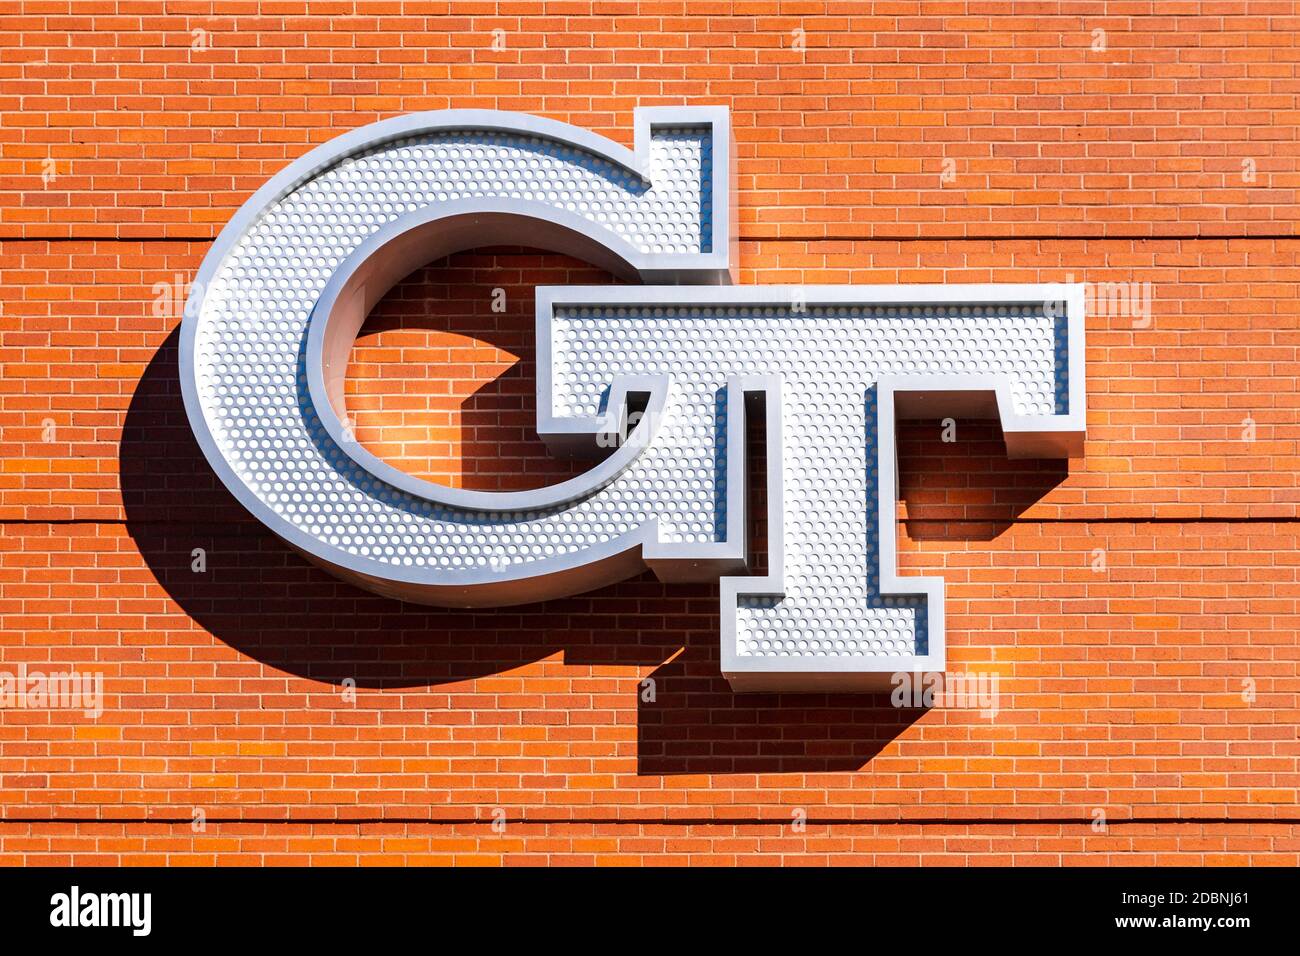 Atlanta, GA / USA - Octubre 29 2020: Logotipo de Georgia Tech en el lado de un edificio de ladrillo en el campus. Foto de stock